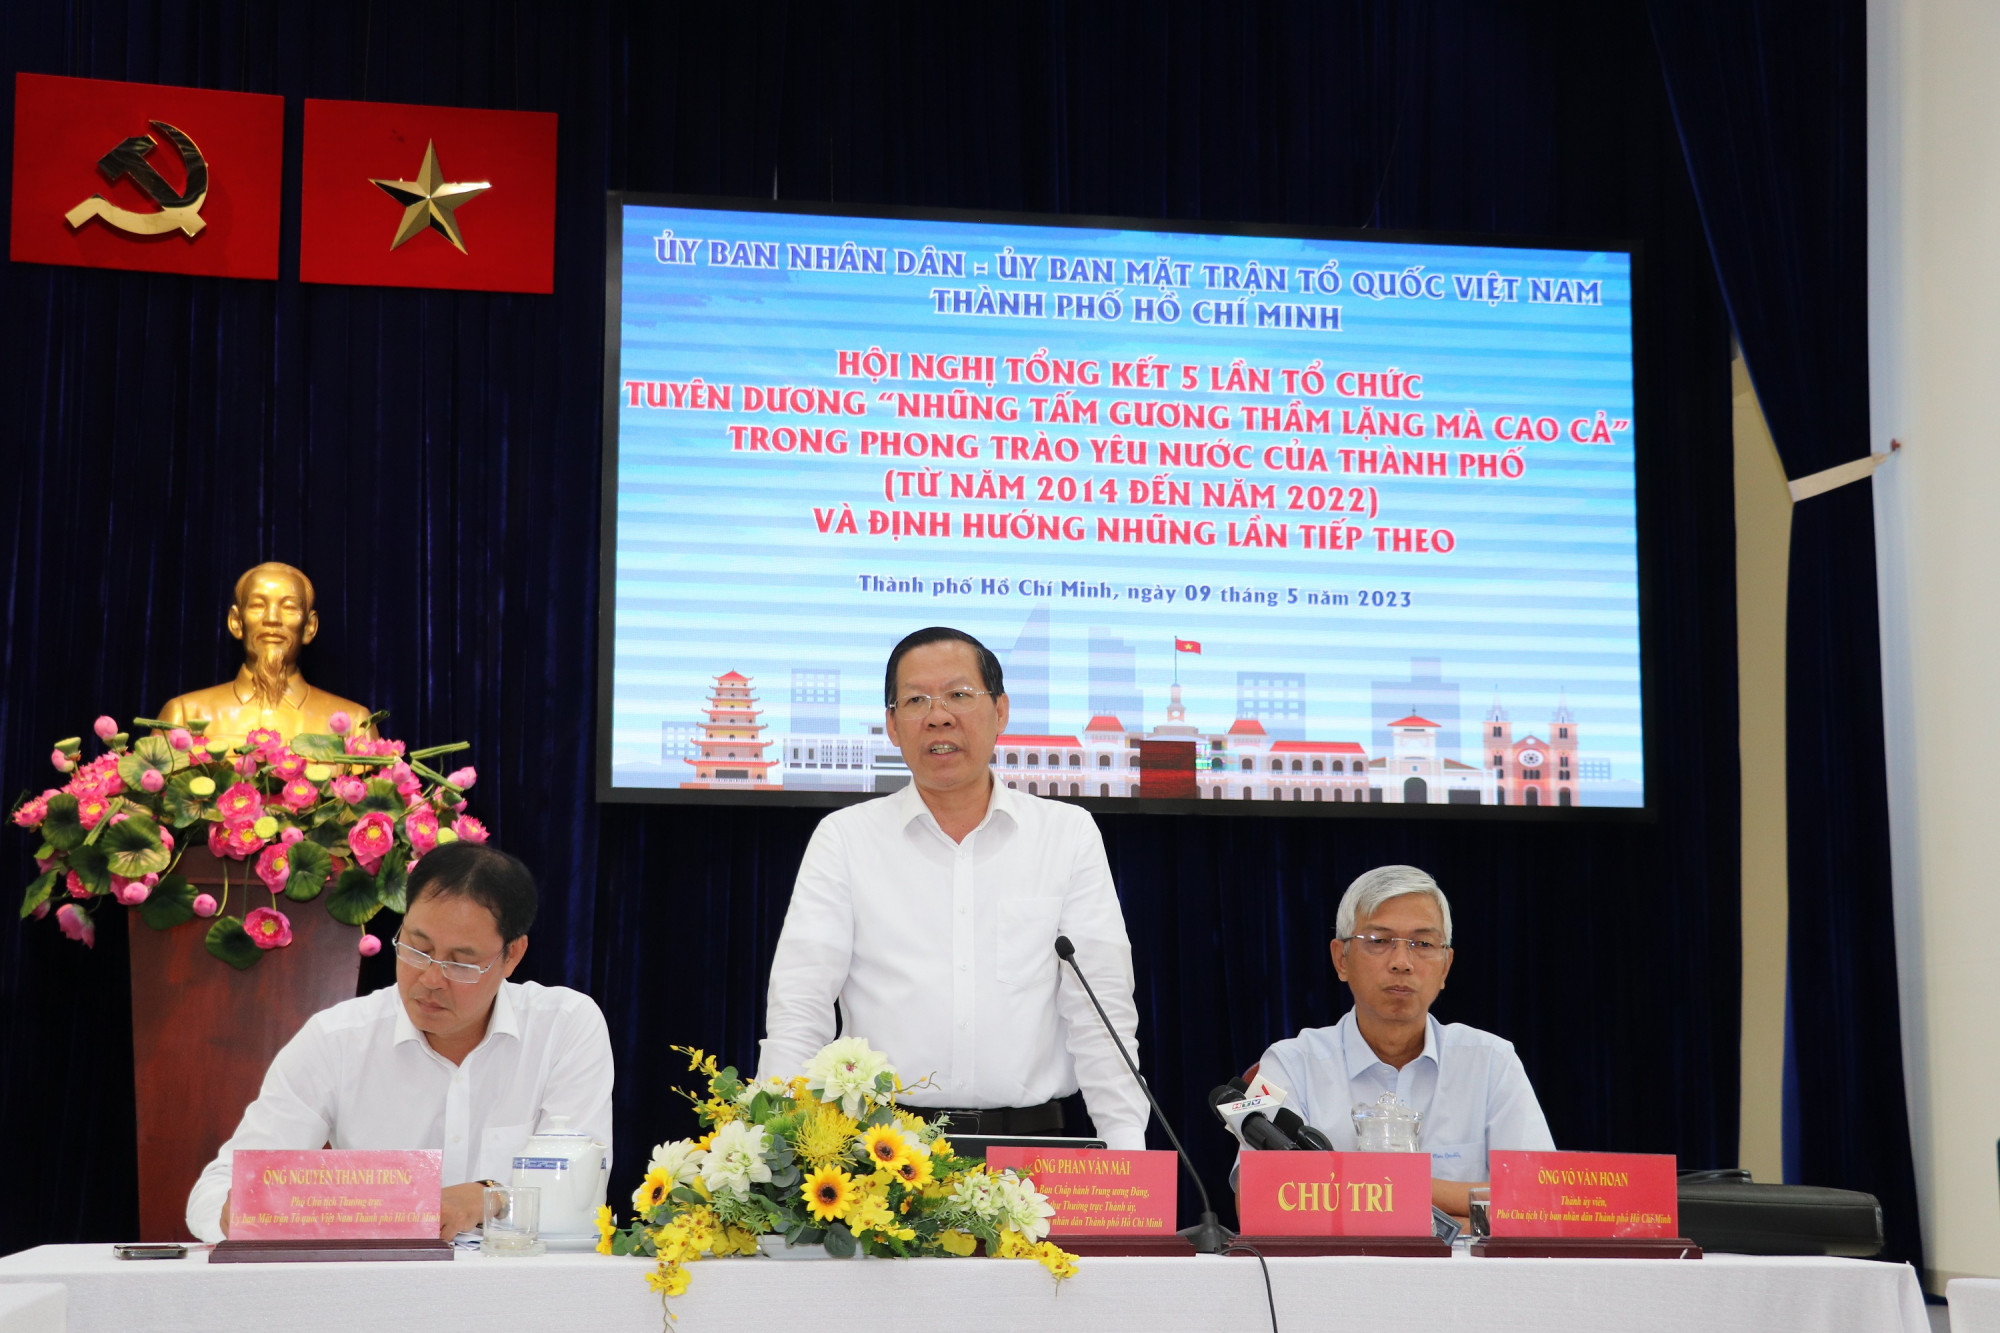 Ông Phan Văn Mãi - Chủ tịch UBND TPHCM - phát biểu đánh giá hội nghị tổng kết sáng 9/5. Ảnh: Quốc Ngọc